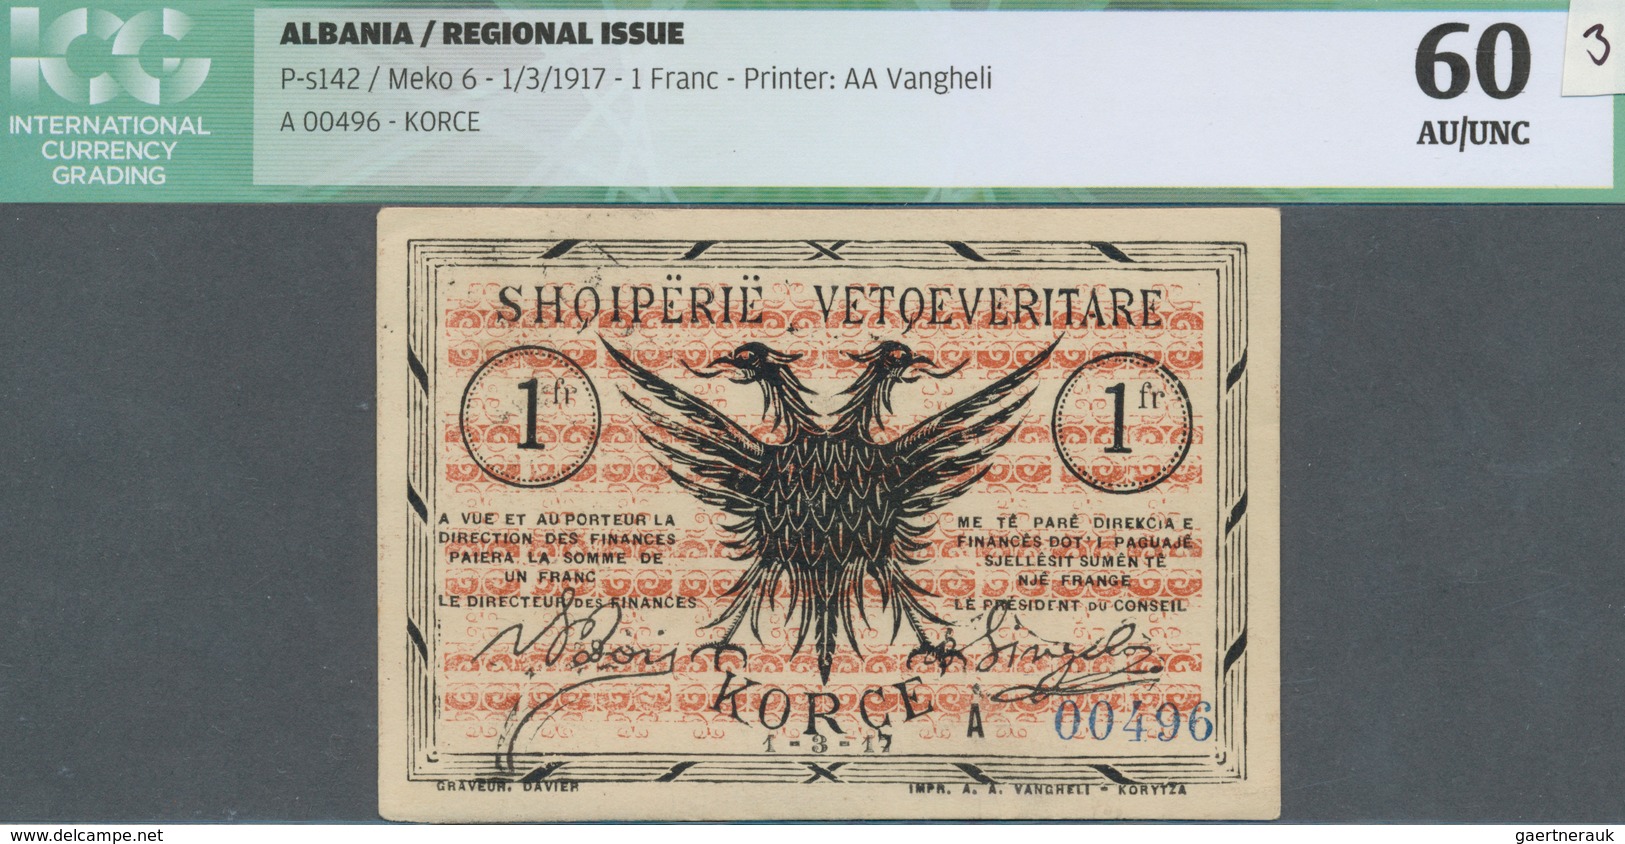 Albania / Albanien: 1 Franc 1917 P. S142, Printer AA Vangheli, S/N #A00496, Unfolded, Light Handling - Albanië